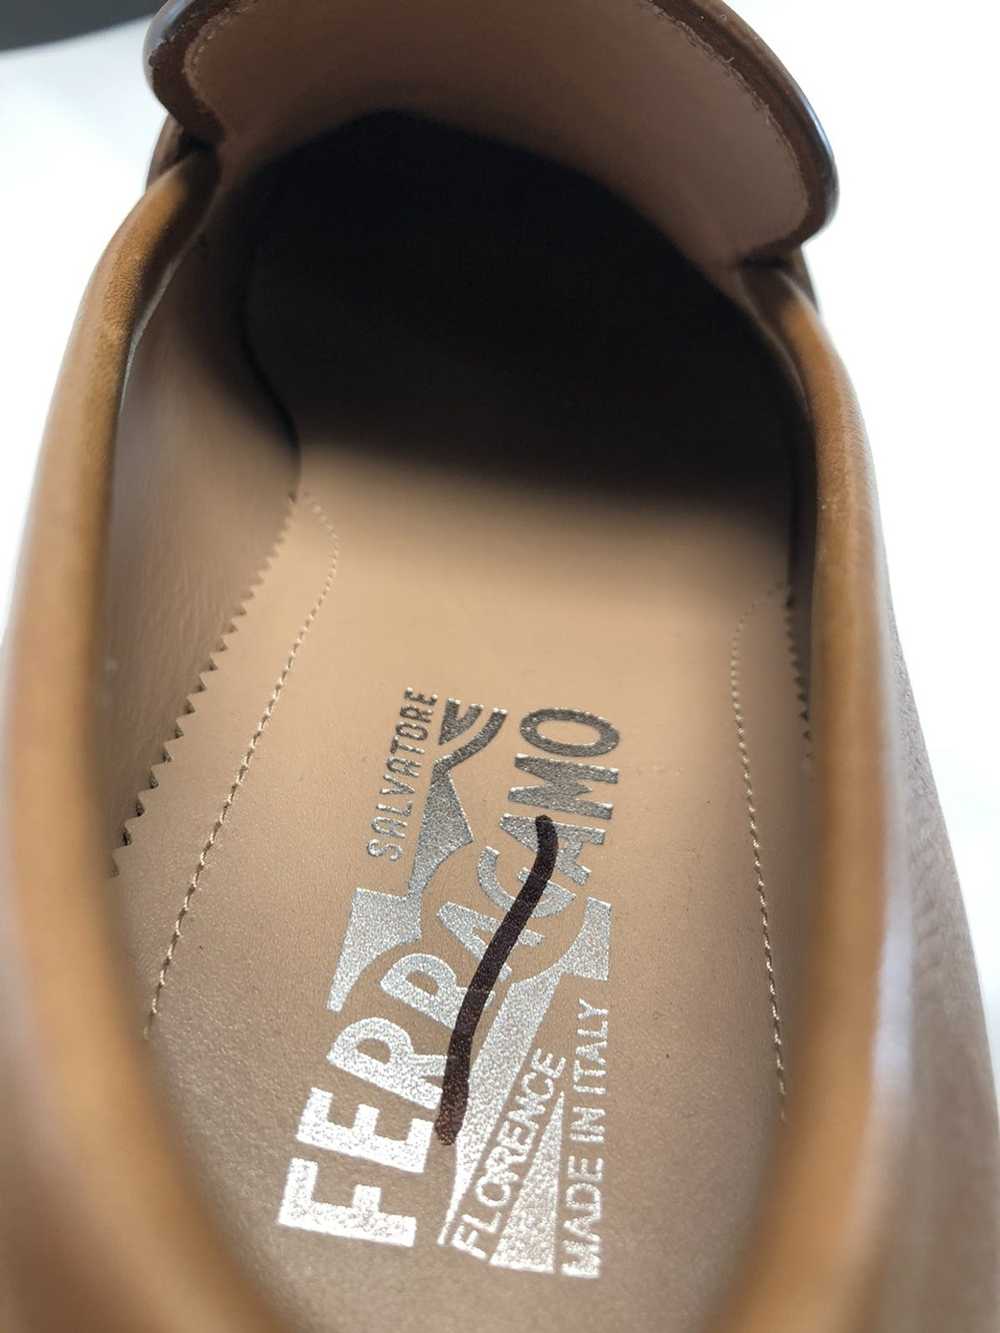 Salvatore Ferragamo Benford loafers - image 8